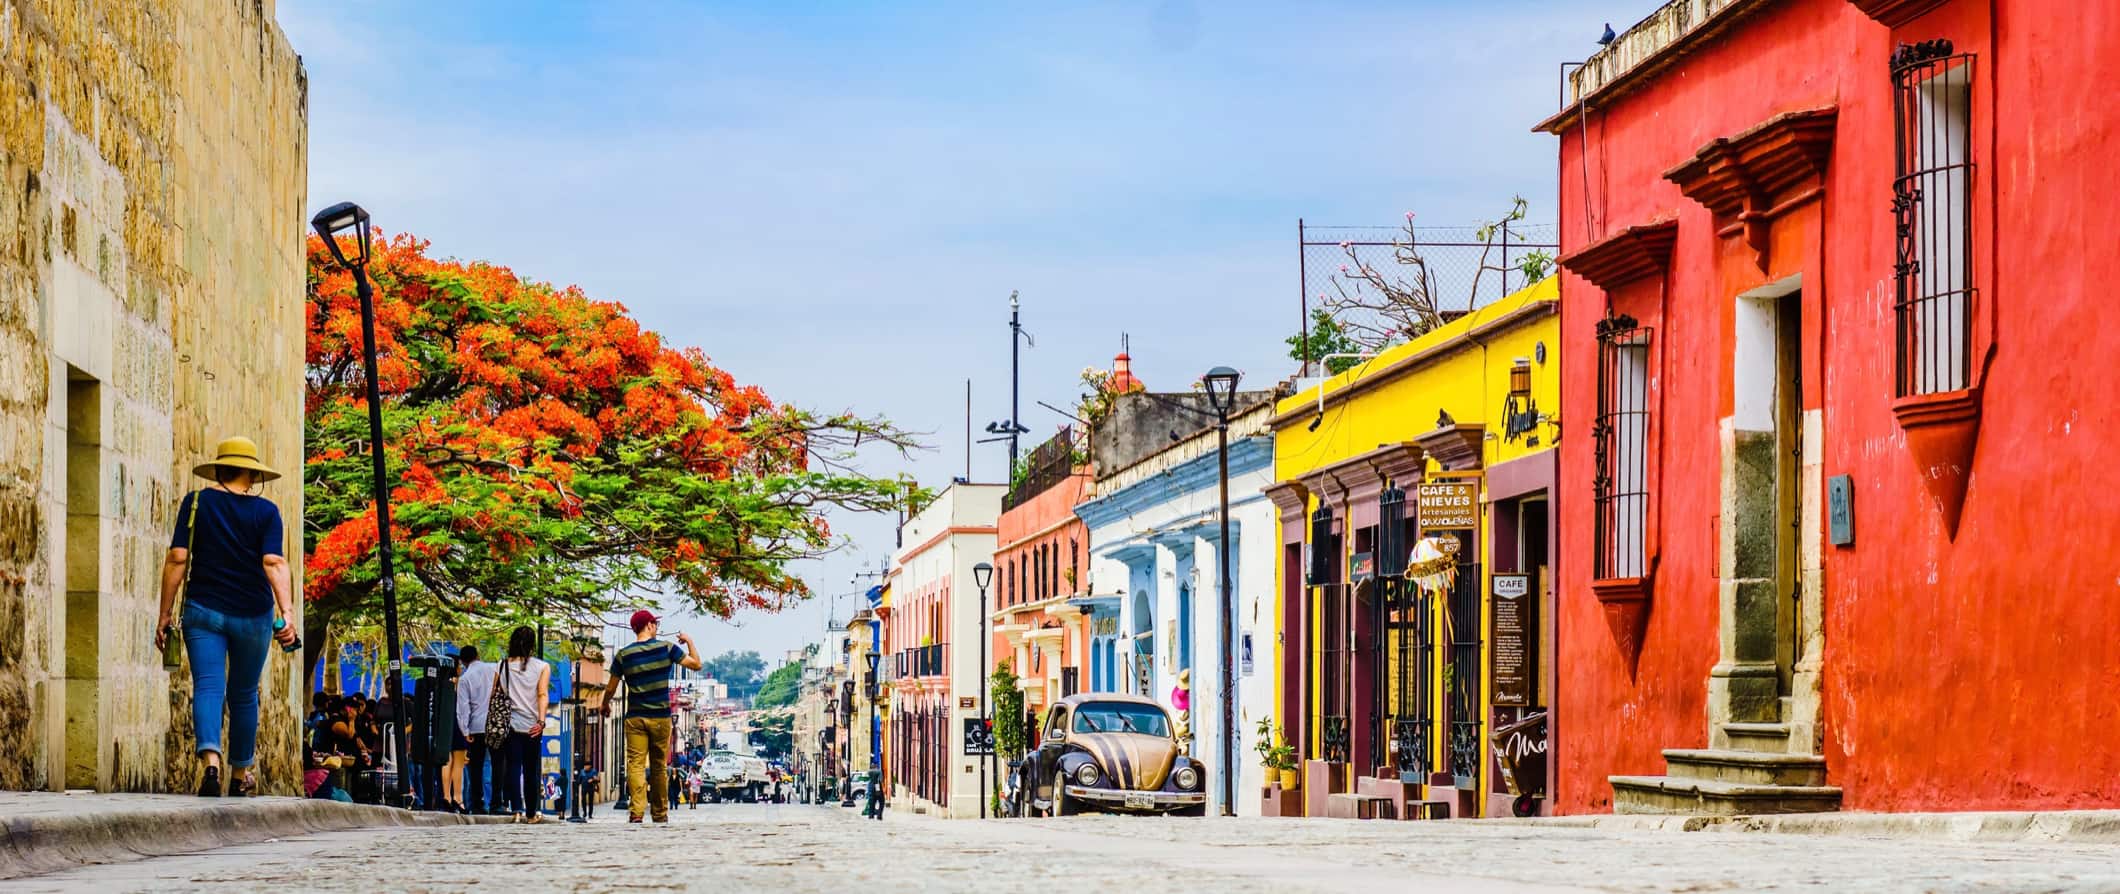 Centro histórico colorido da cidade de Oakhak, México